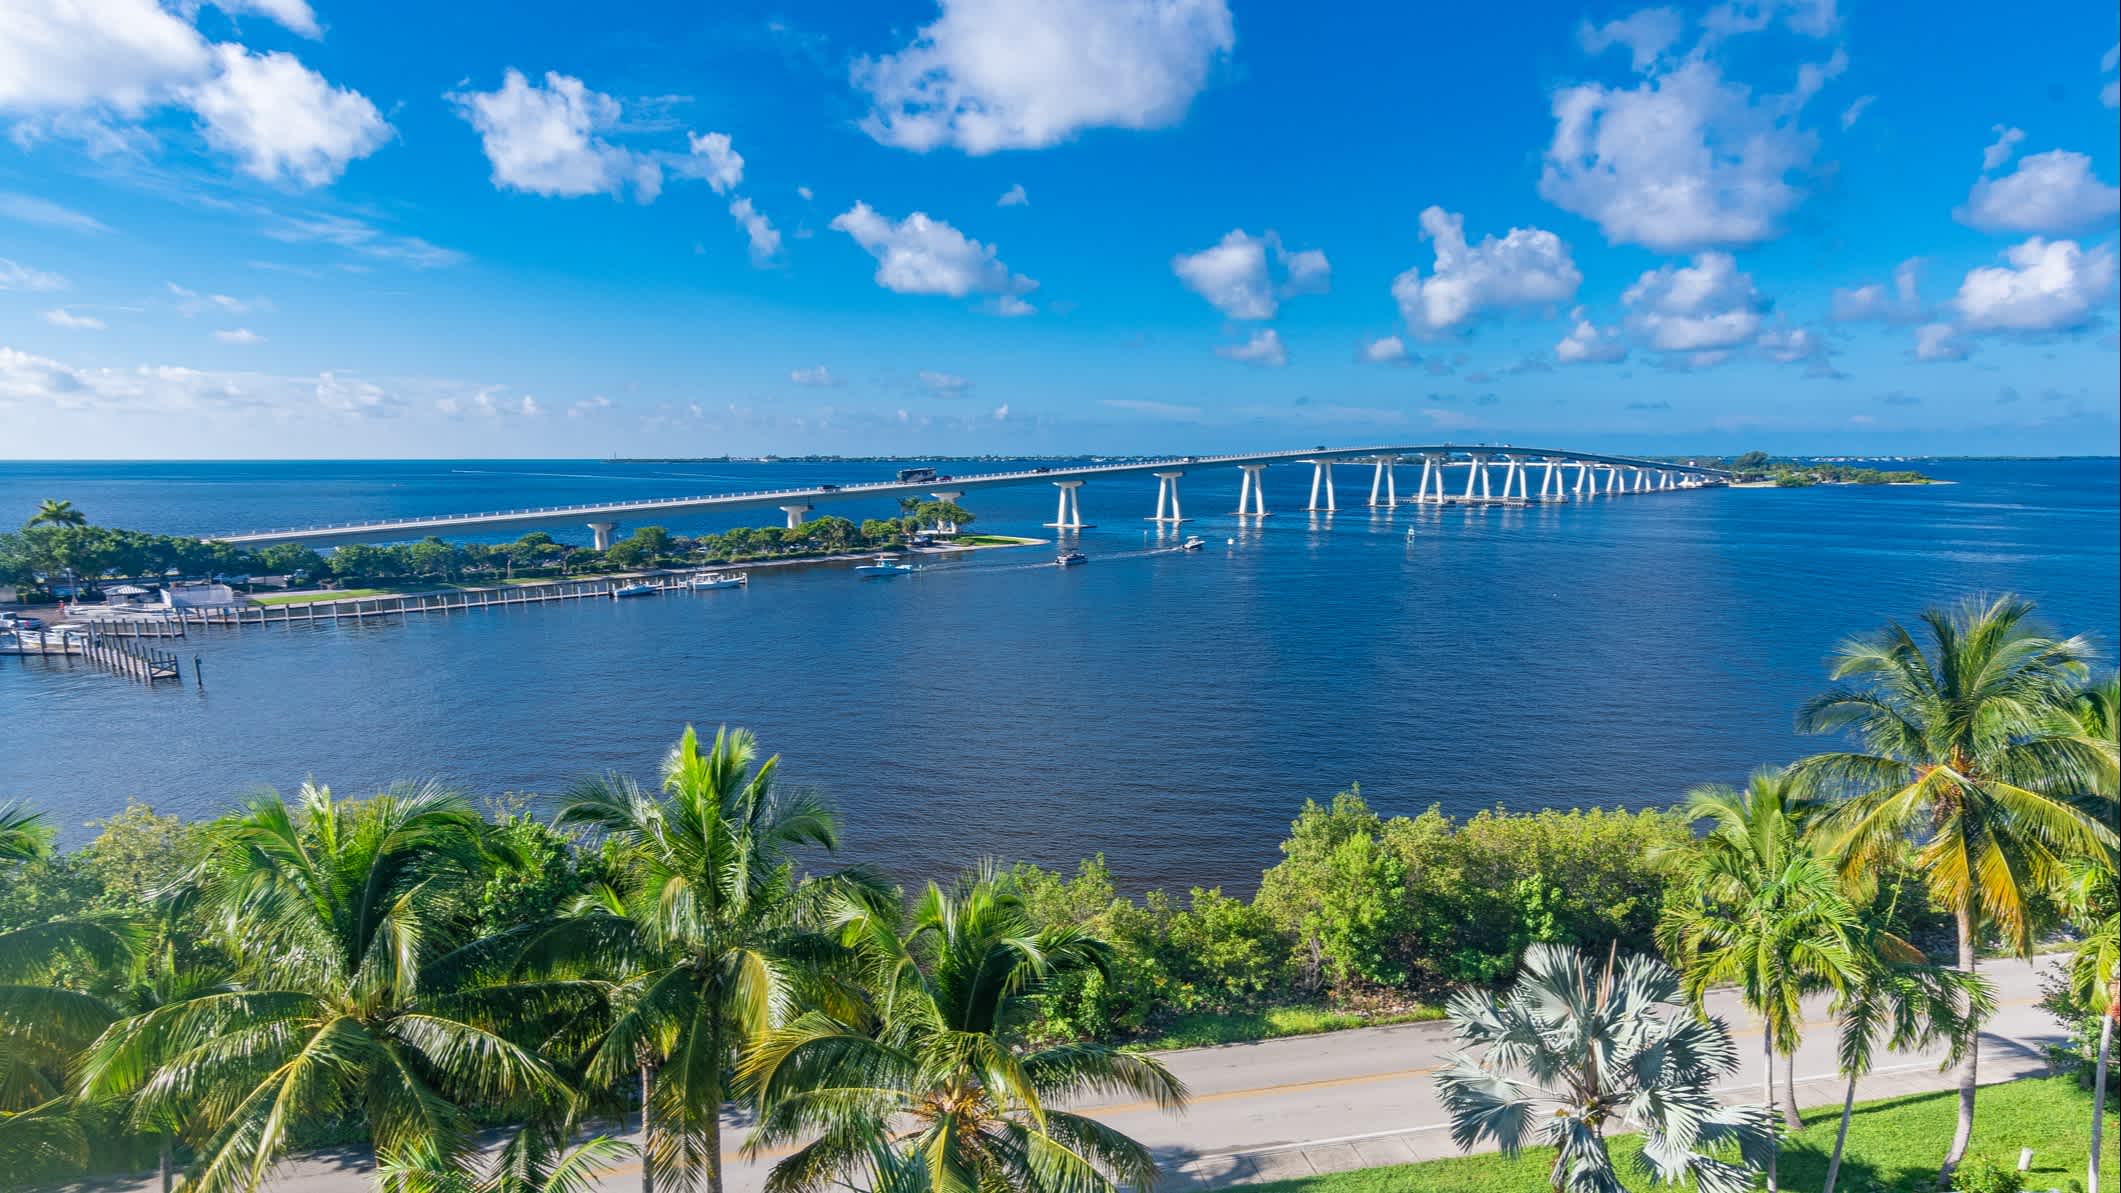 Blick auf den Sanibel Island Causeway, der die Insel Sanibel mit Fort Myers, verbindet. Florida, USA.
